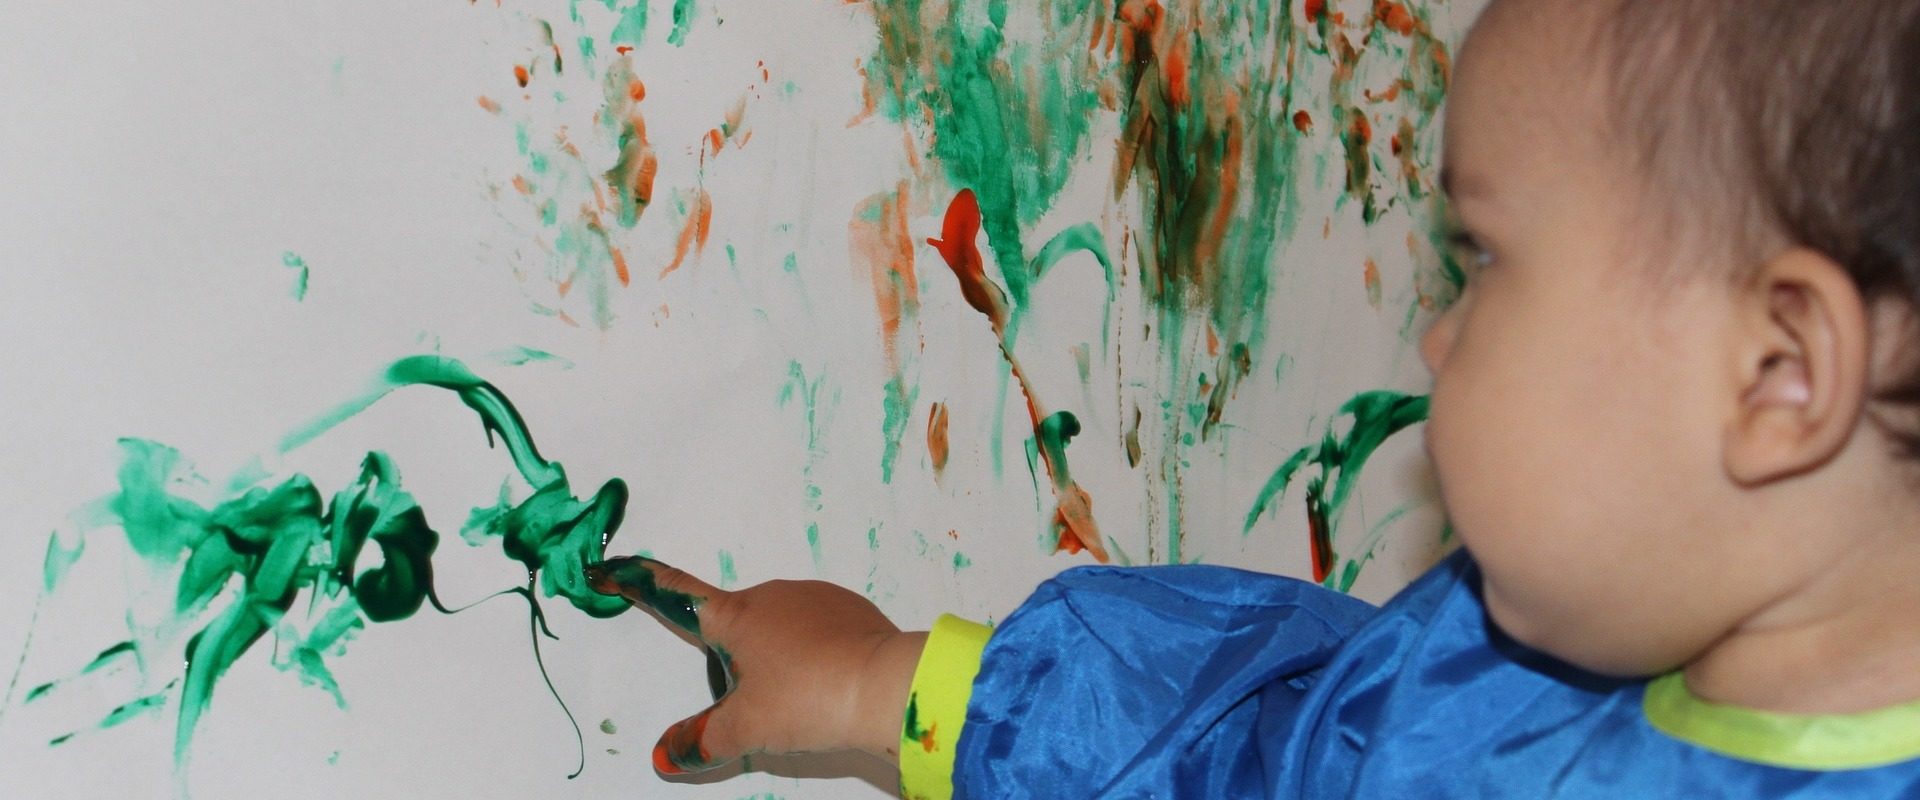 [ANNULÉS] Dimanche 15 mars – Petite enfance : Ateliers peinture et argile